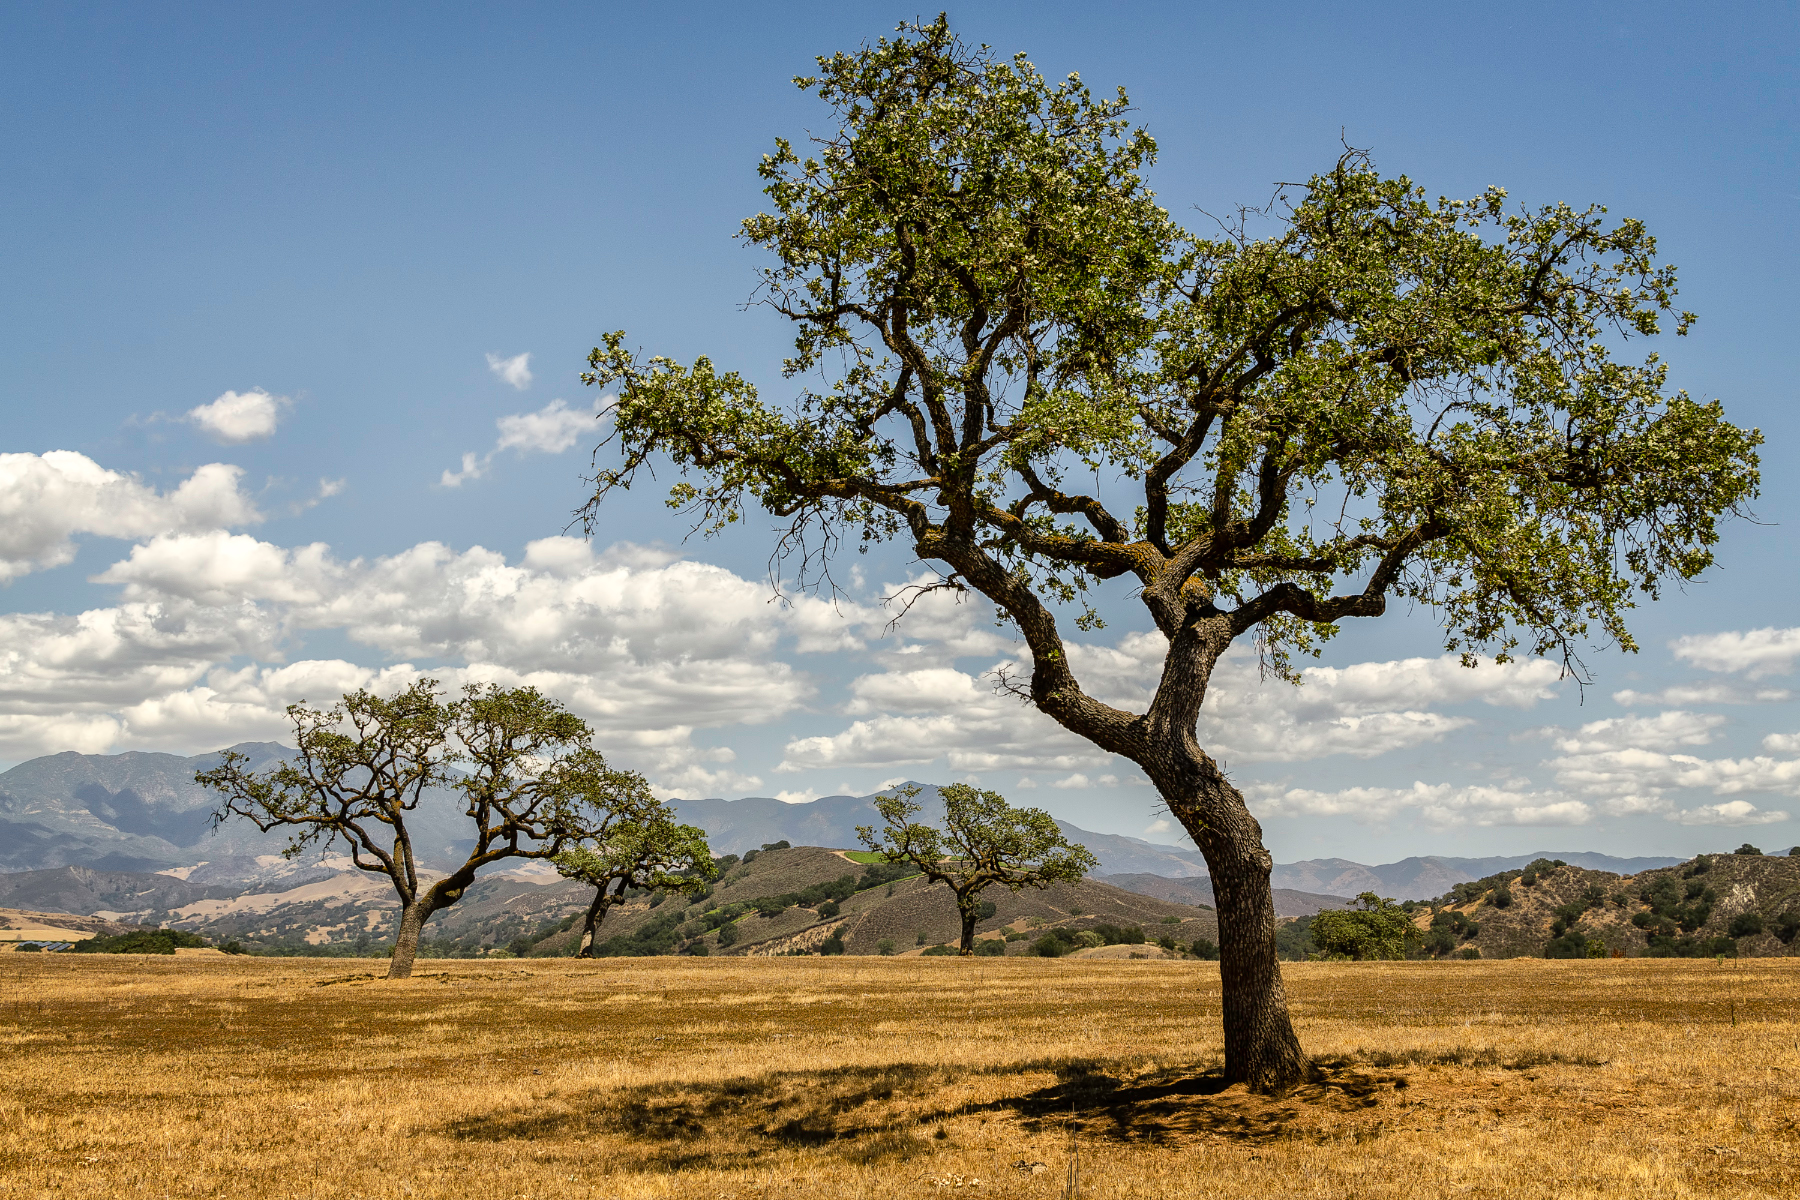 California's Serengeti